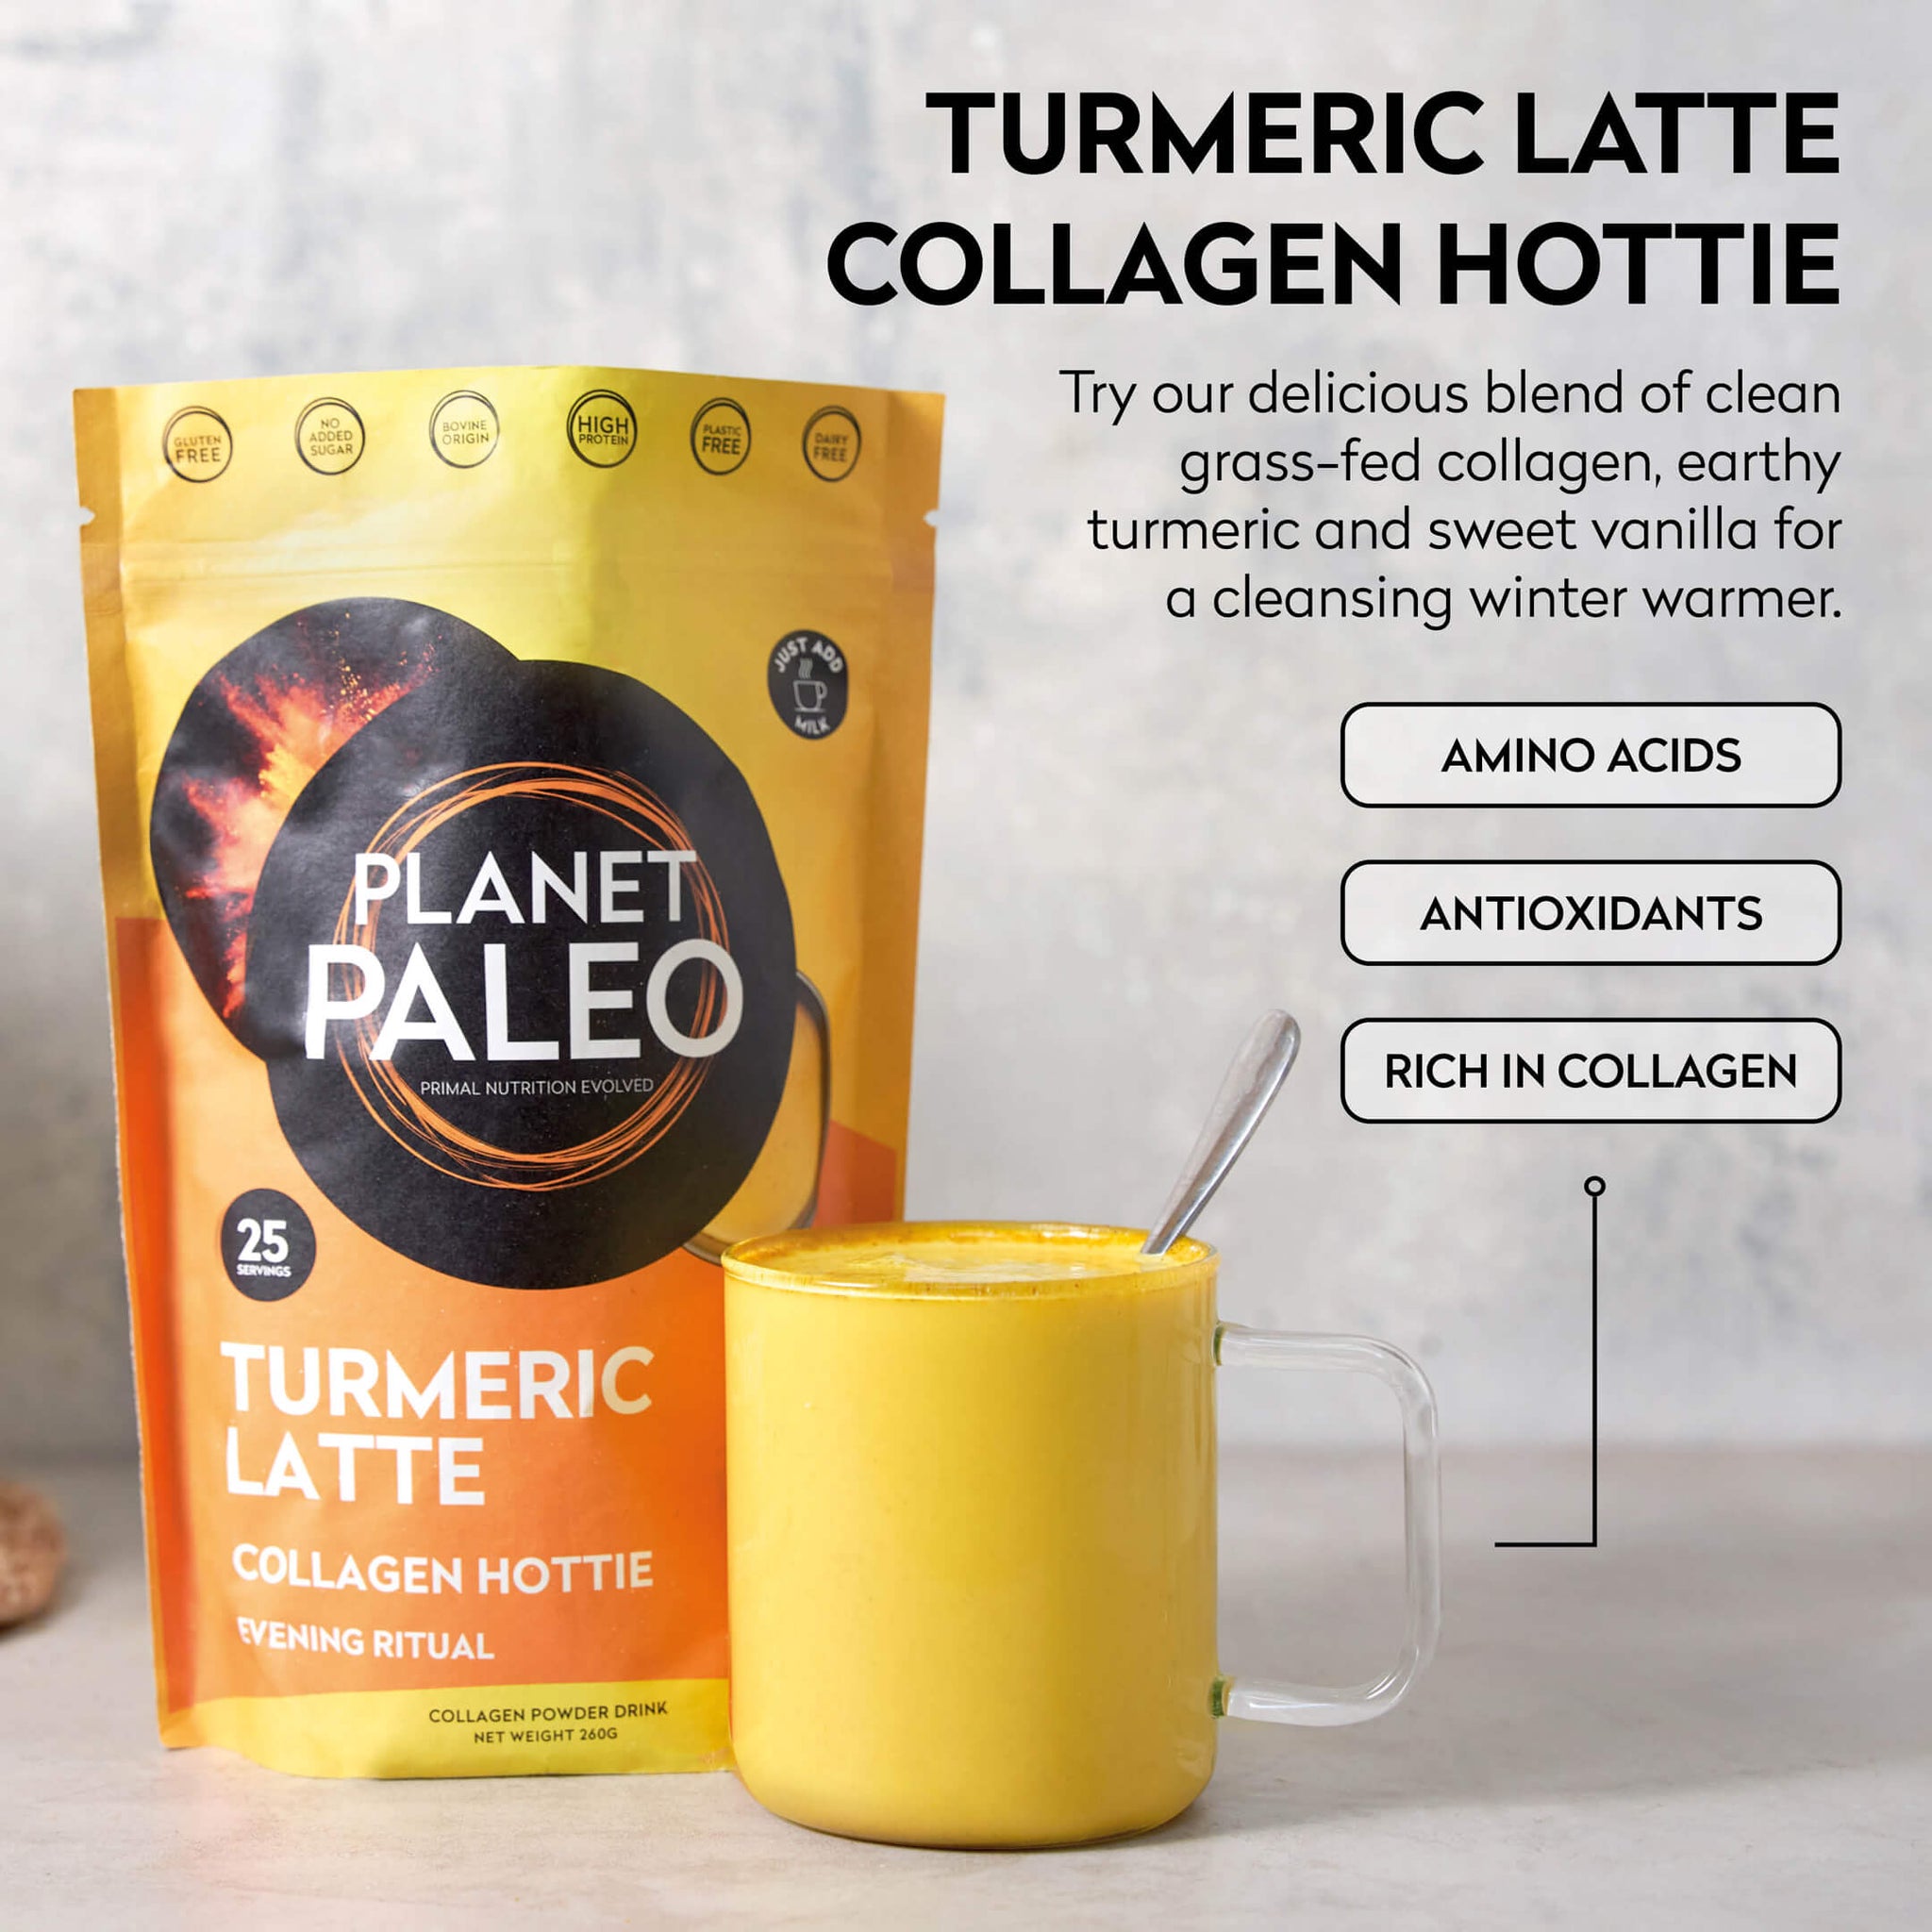 Turmeric Latte - Collagen Hottie